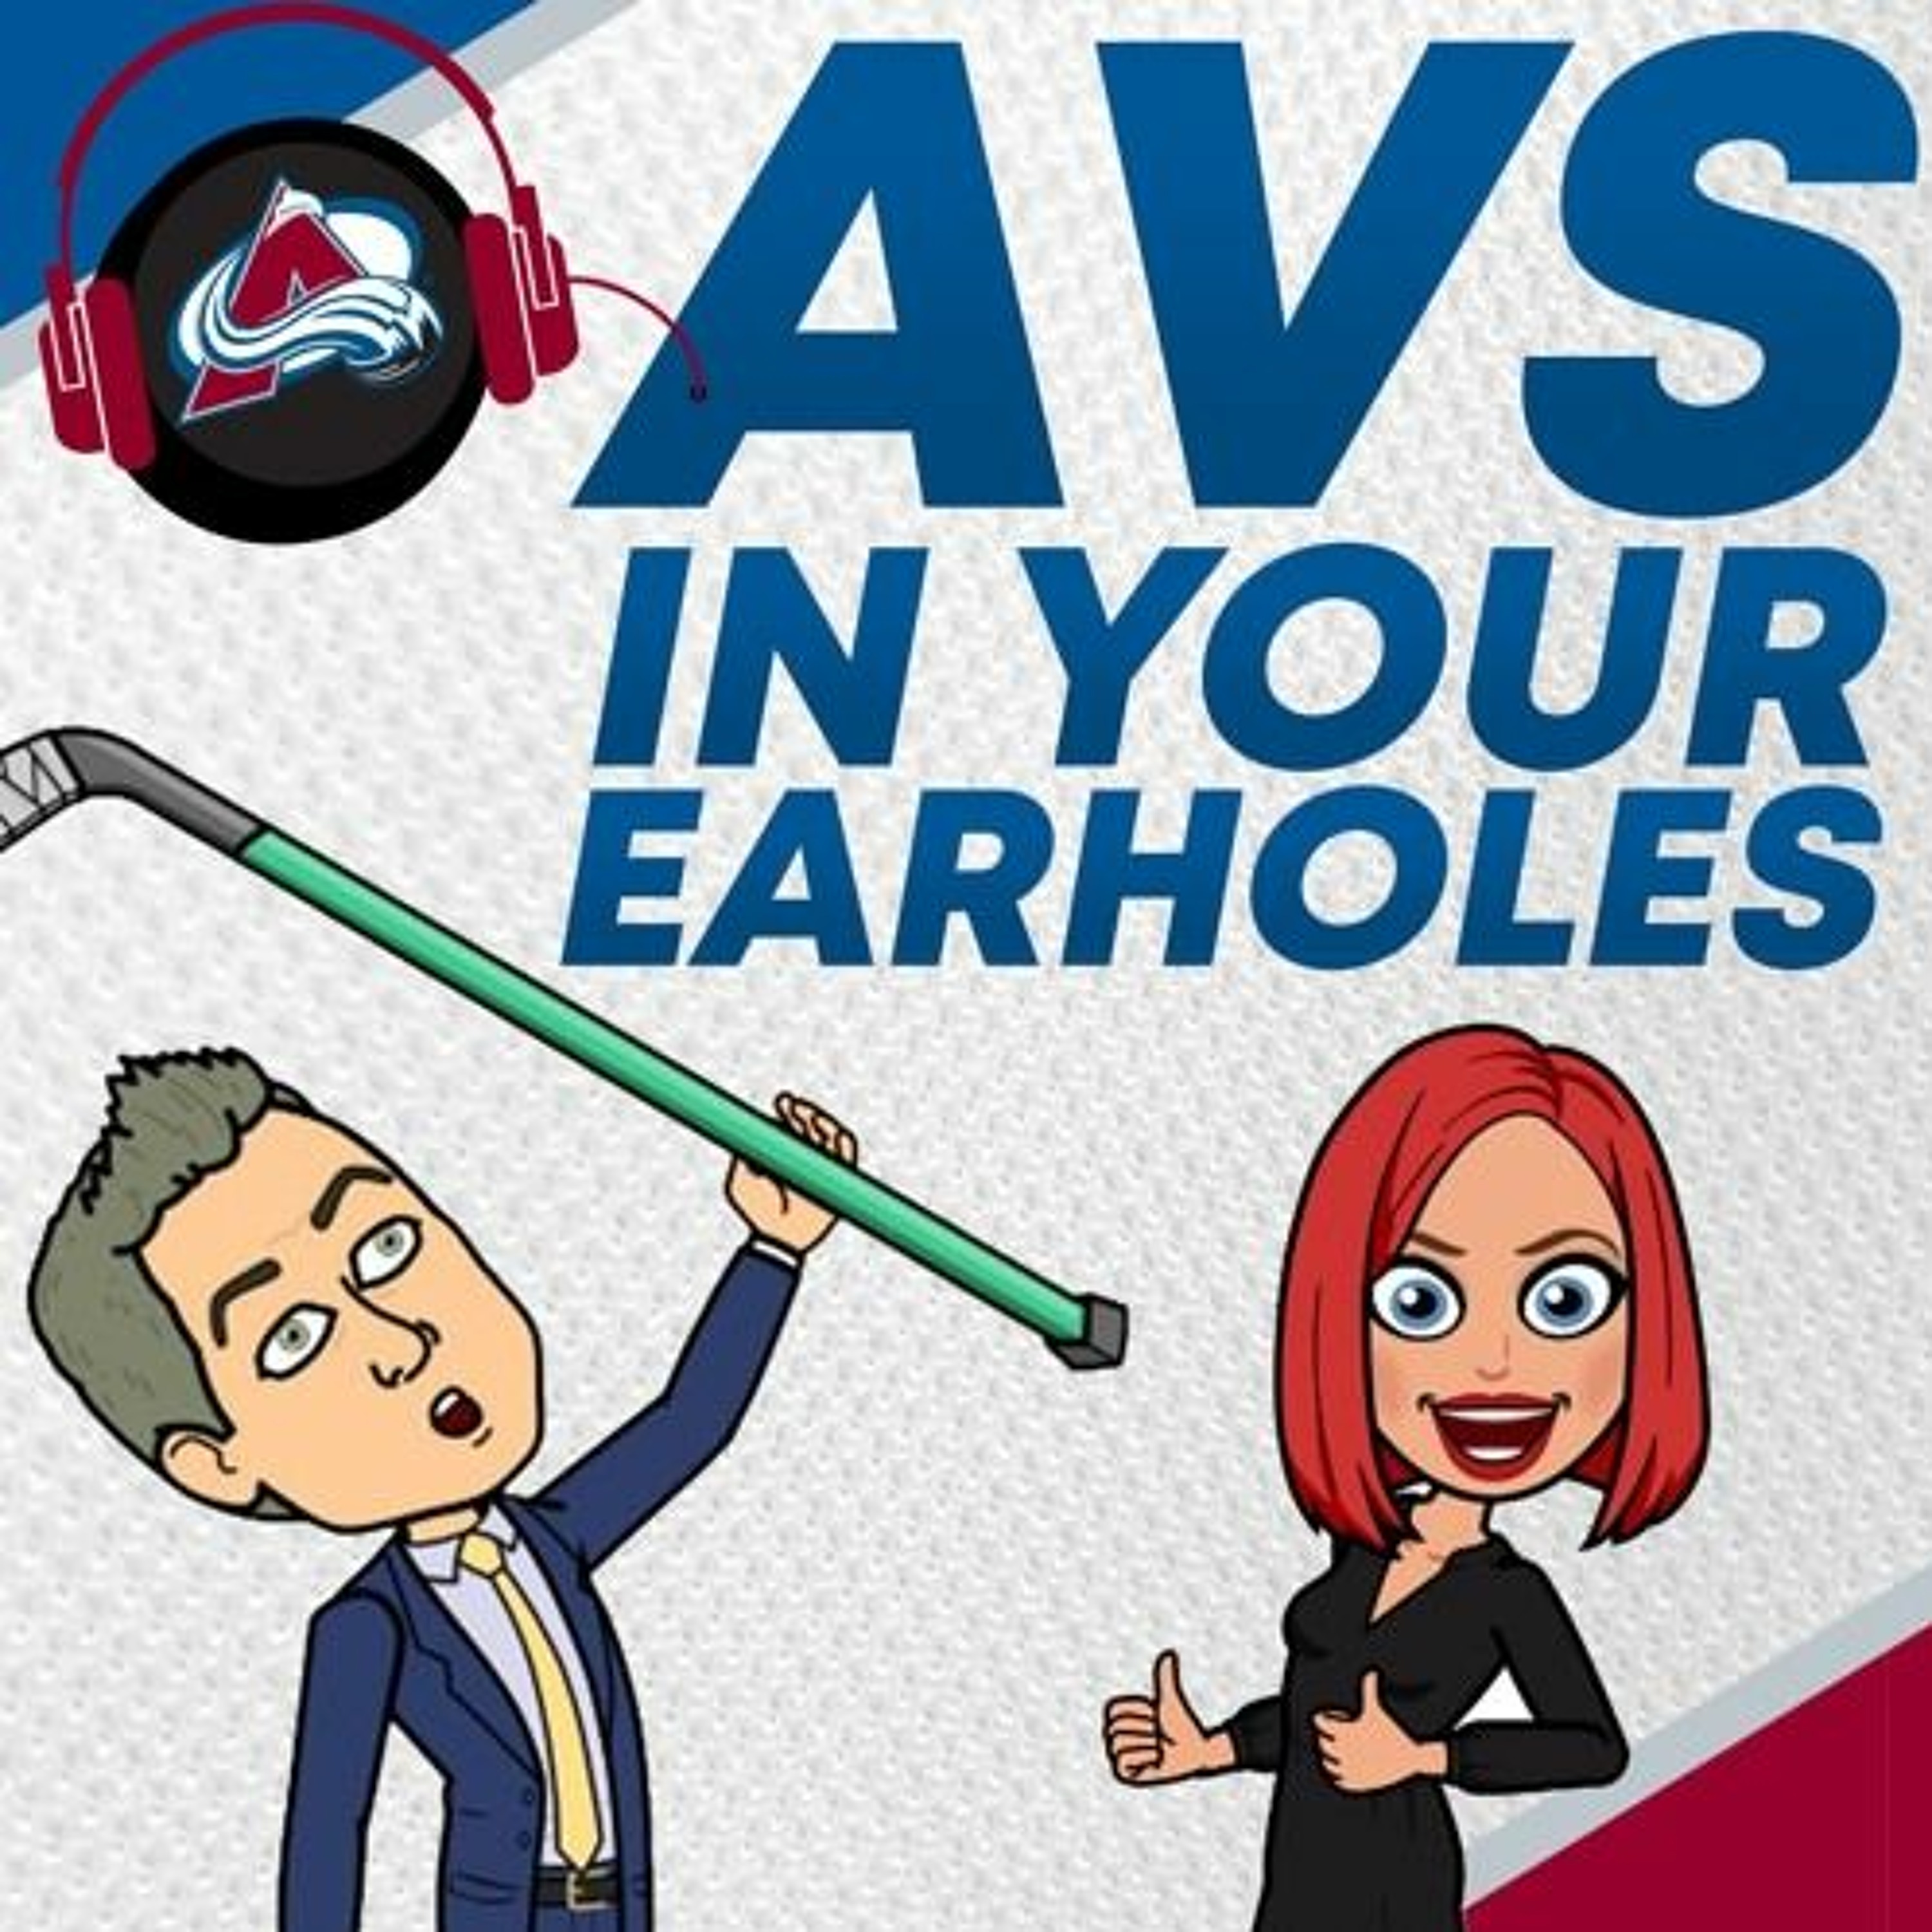 Avs In Your Earholes, Episode 2